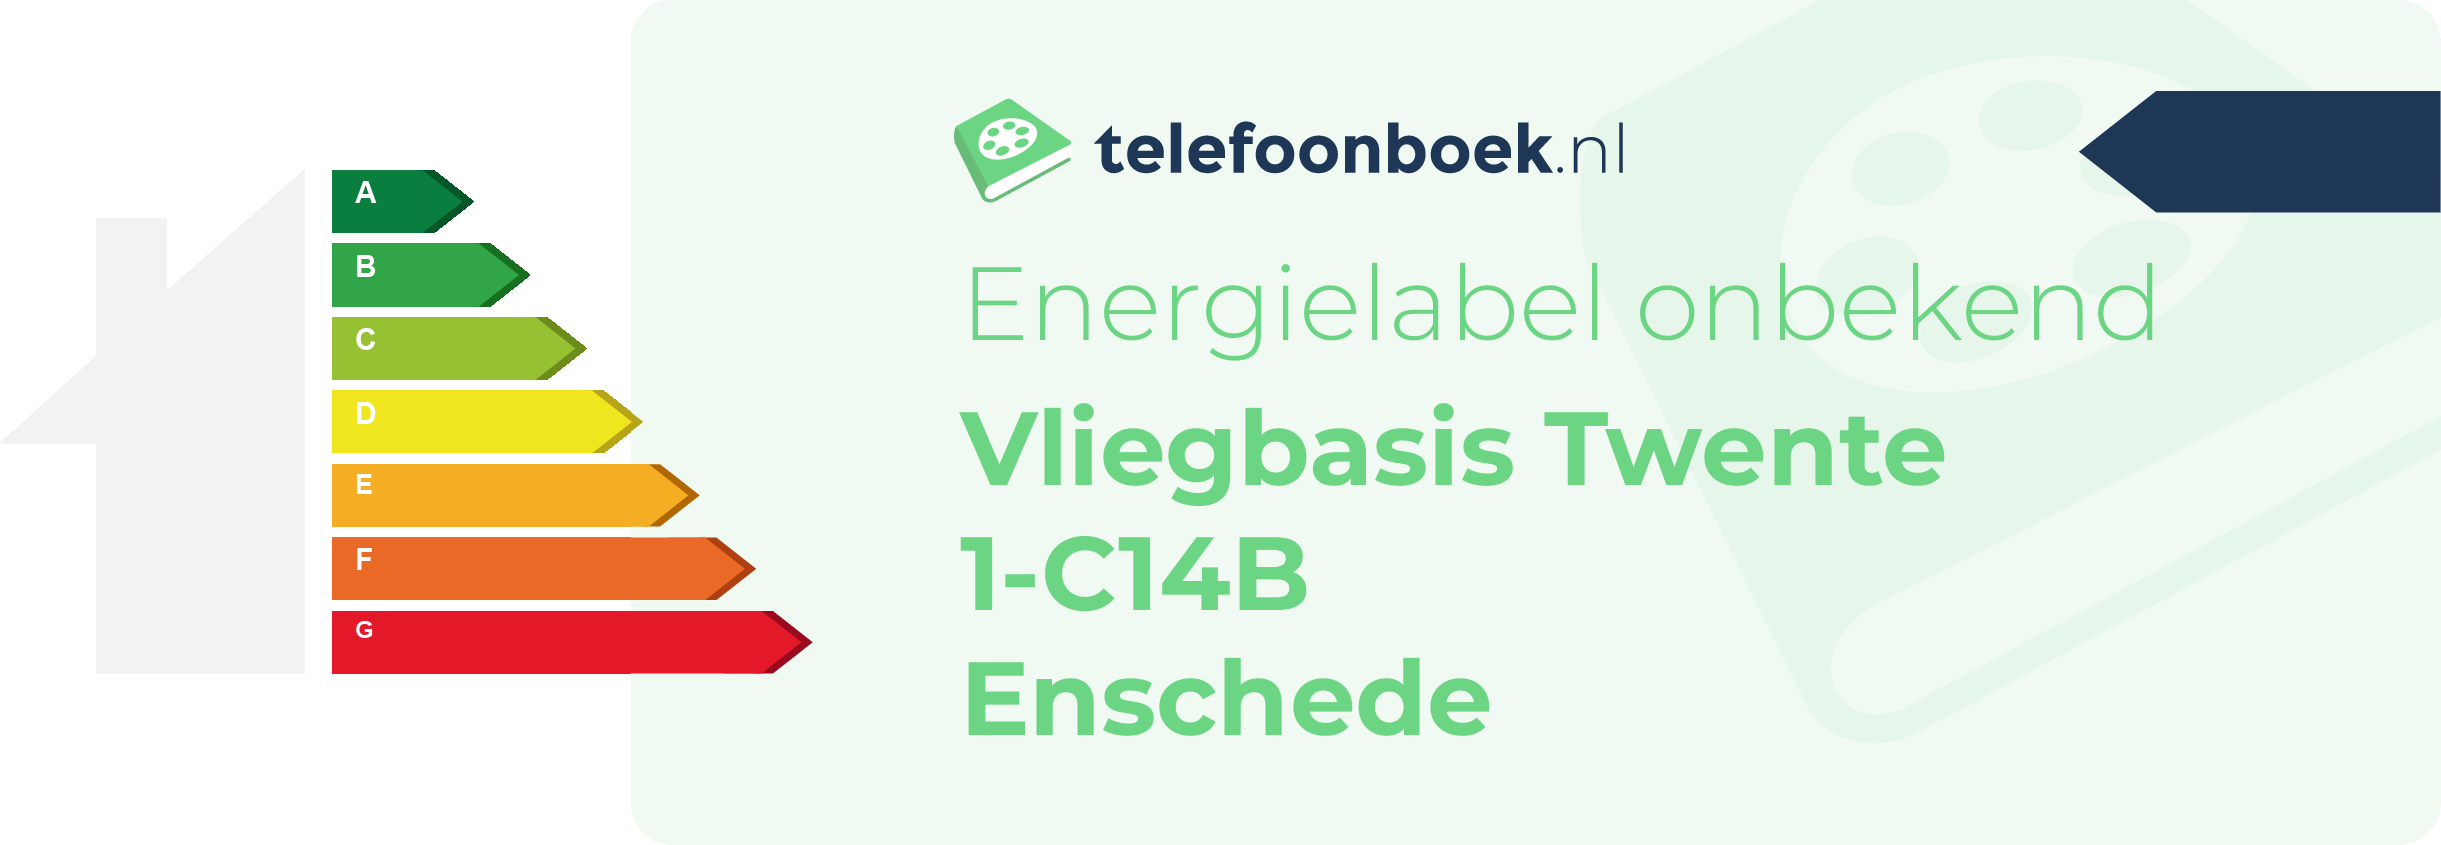 Energielabel Vliegbasis Twente 1-C14B Enschede